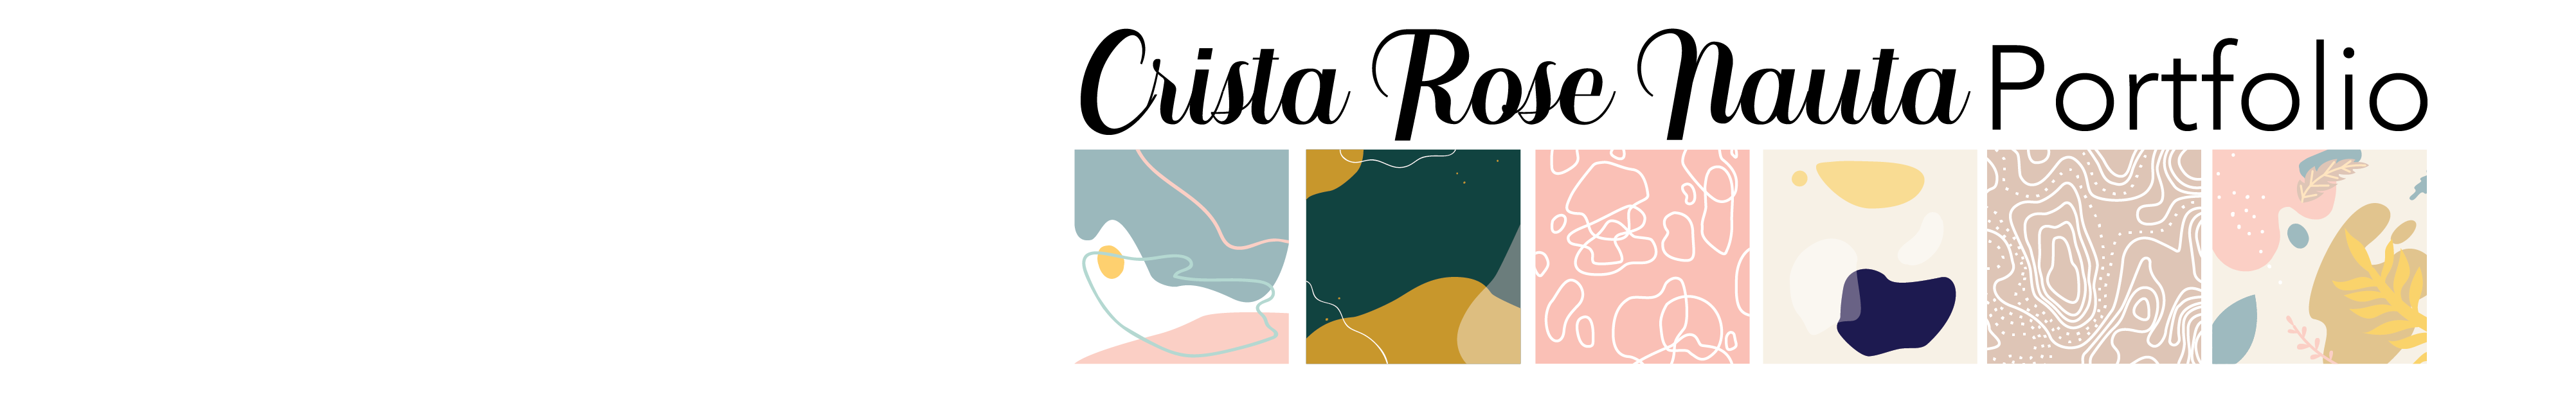 Баннер профиля Crista Rose Nauta